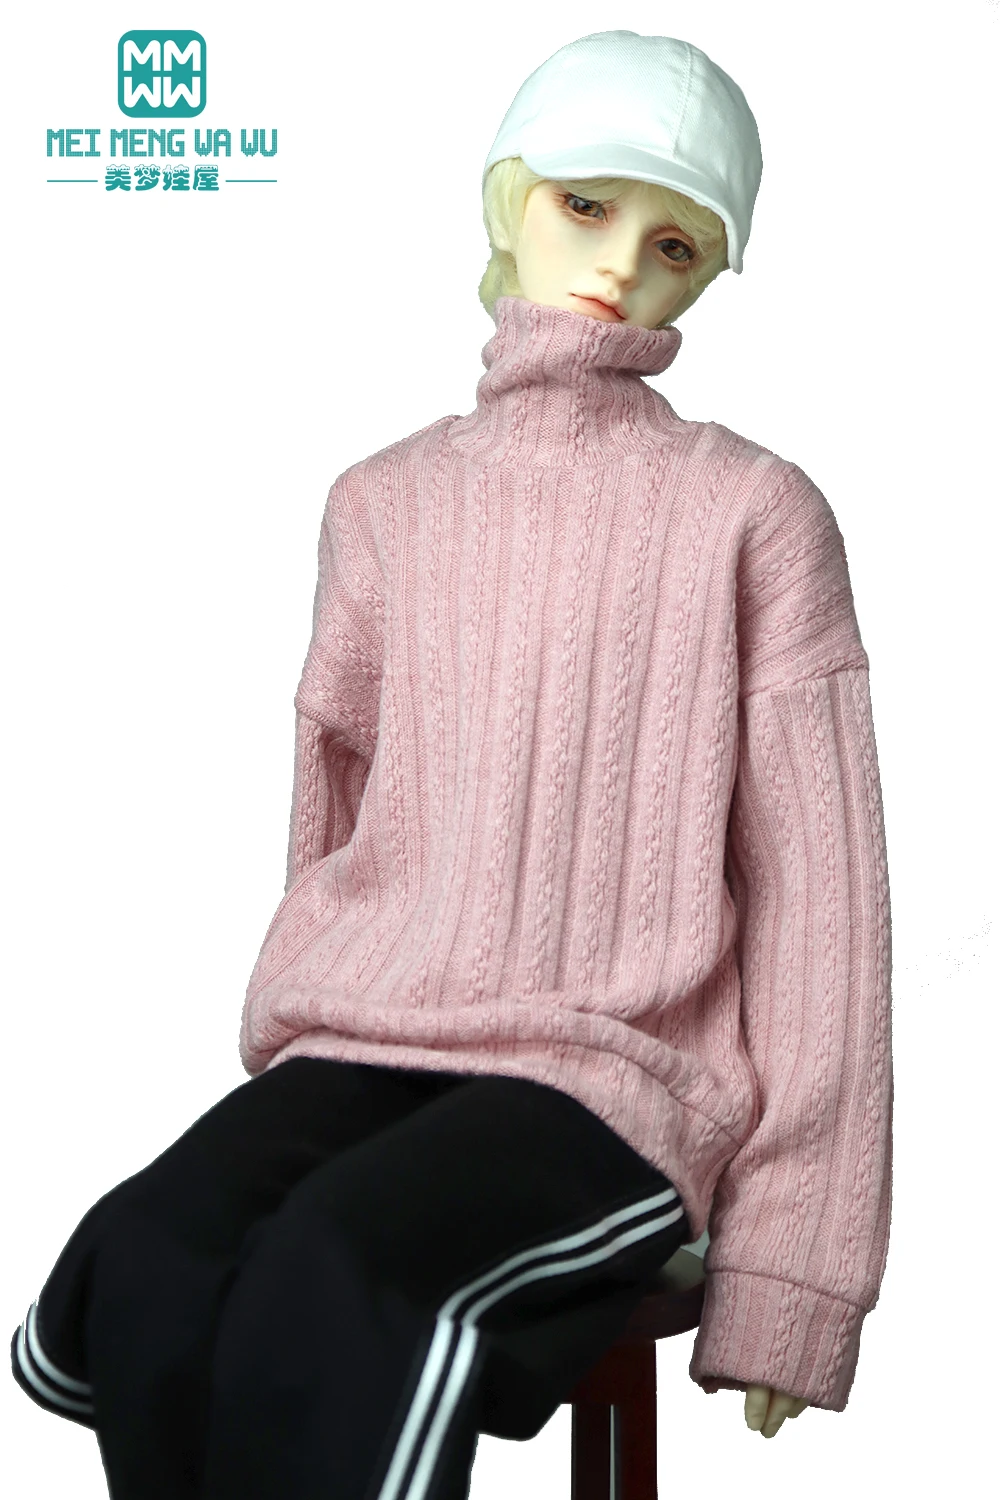 68-75 см BJD Дядя SD17 Сферический шарнир Кукольная одежда Модный свитер с высоким воротом